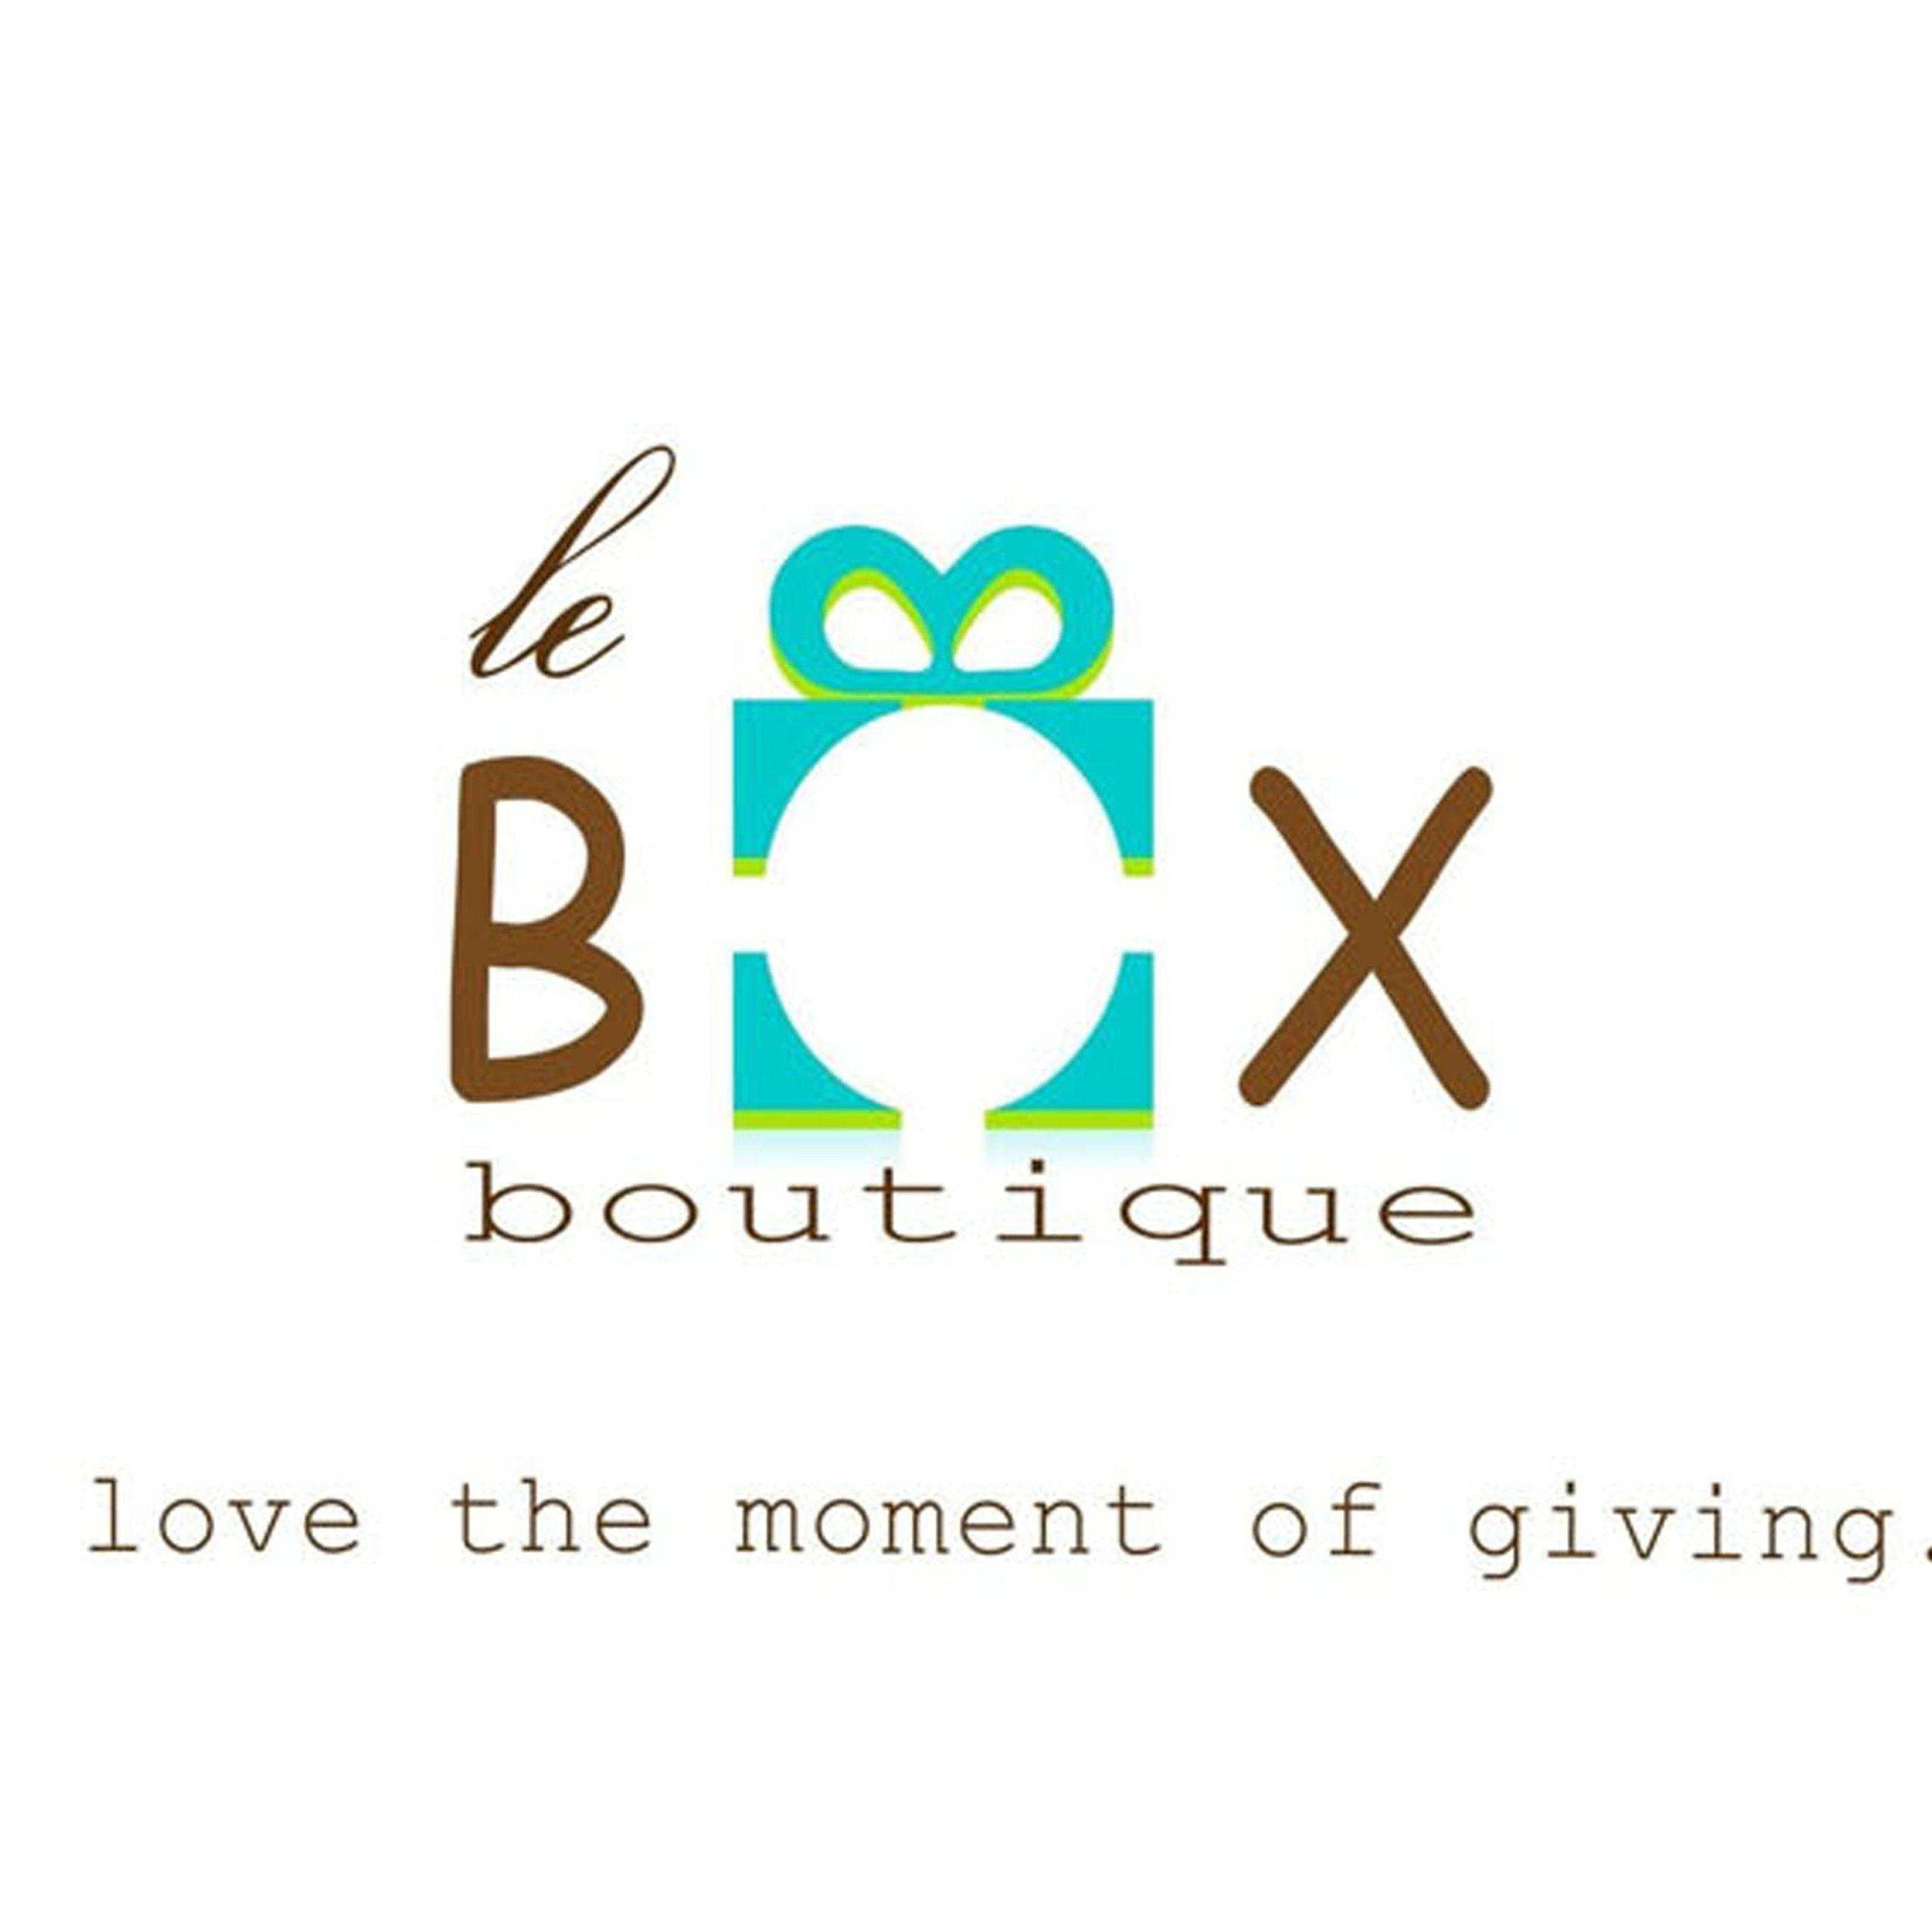 leboxboutique - Le Box Boutique